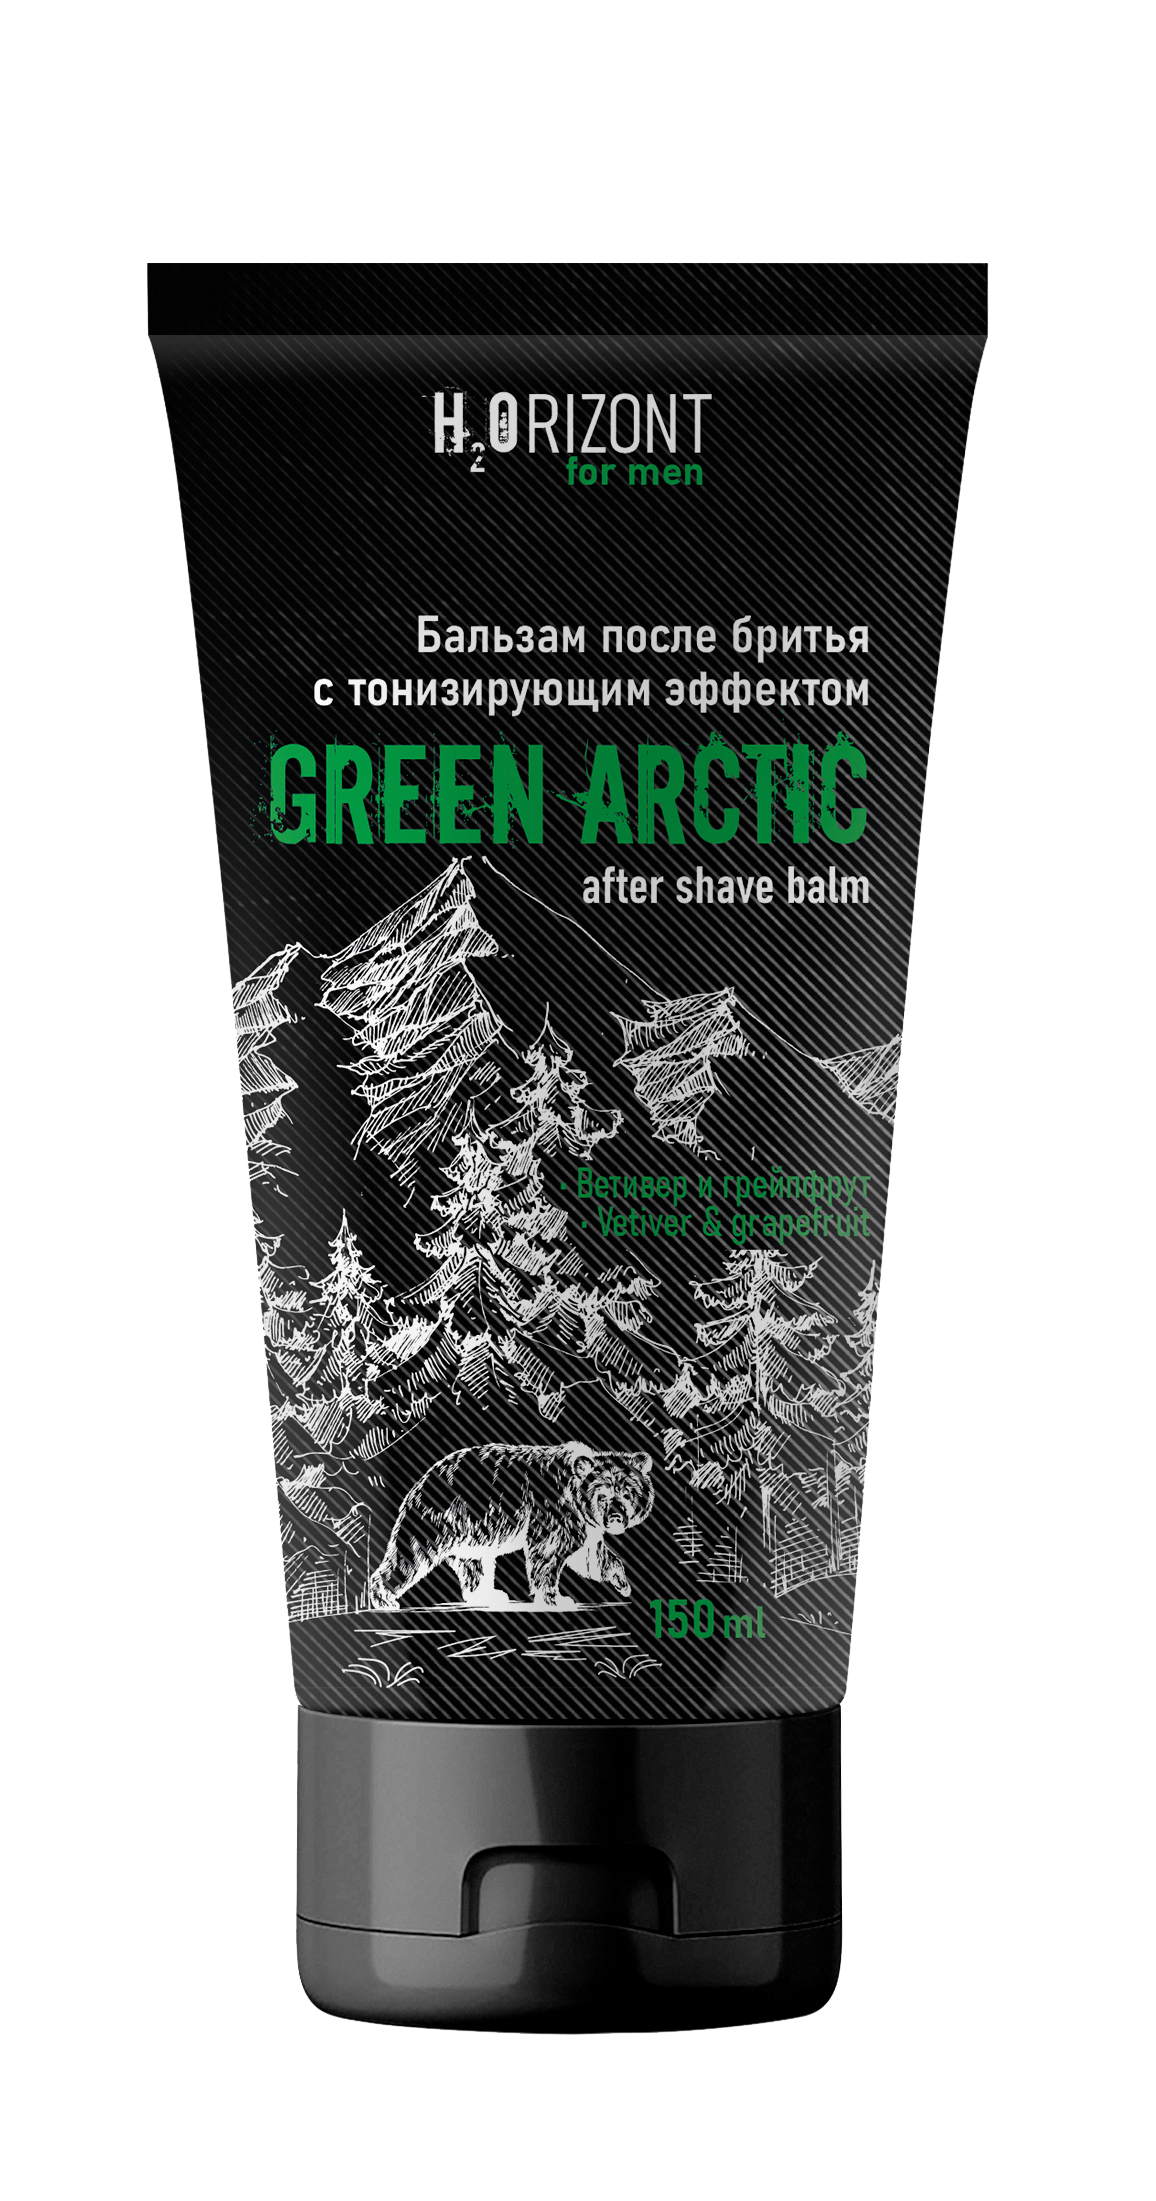 Бальзам после бритья FAMILY COSMETICS тонизирующий эффект Green Arctic, 150 мл proraso бальзам тонизирующий после бритья cypress